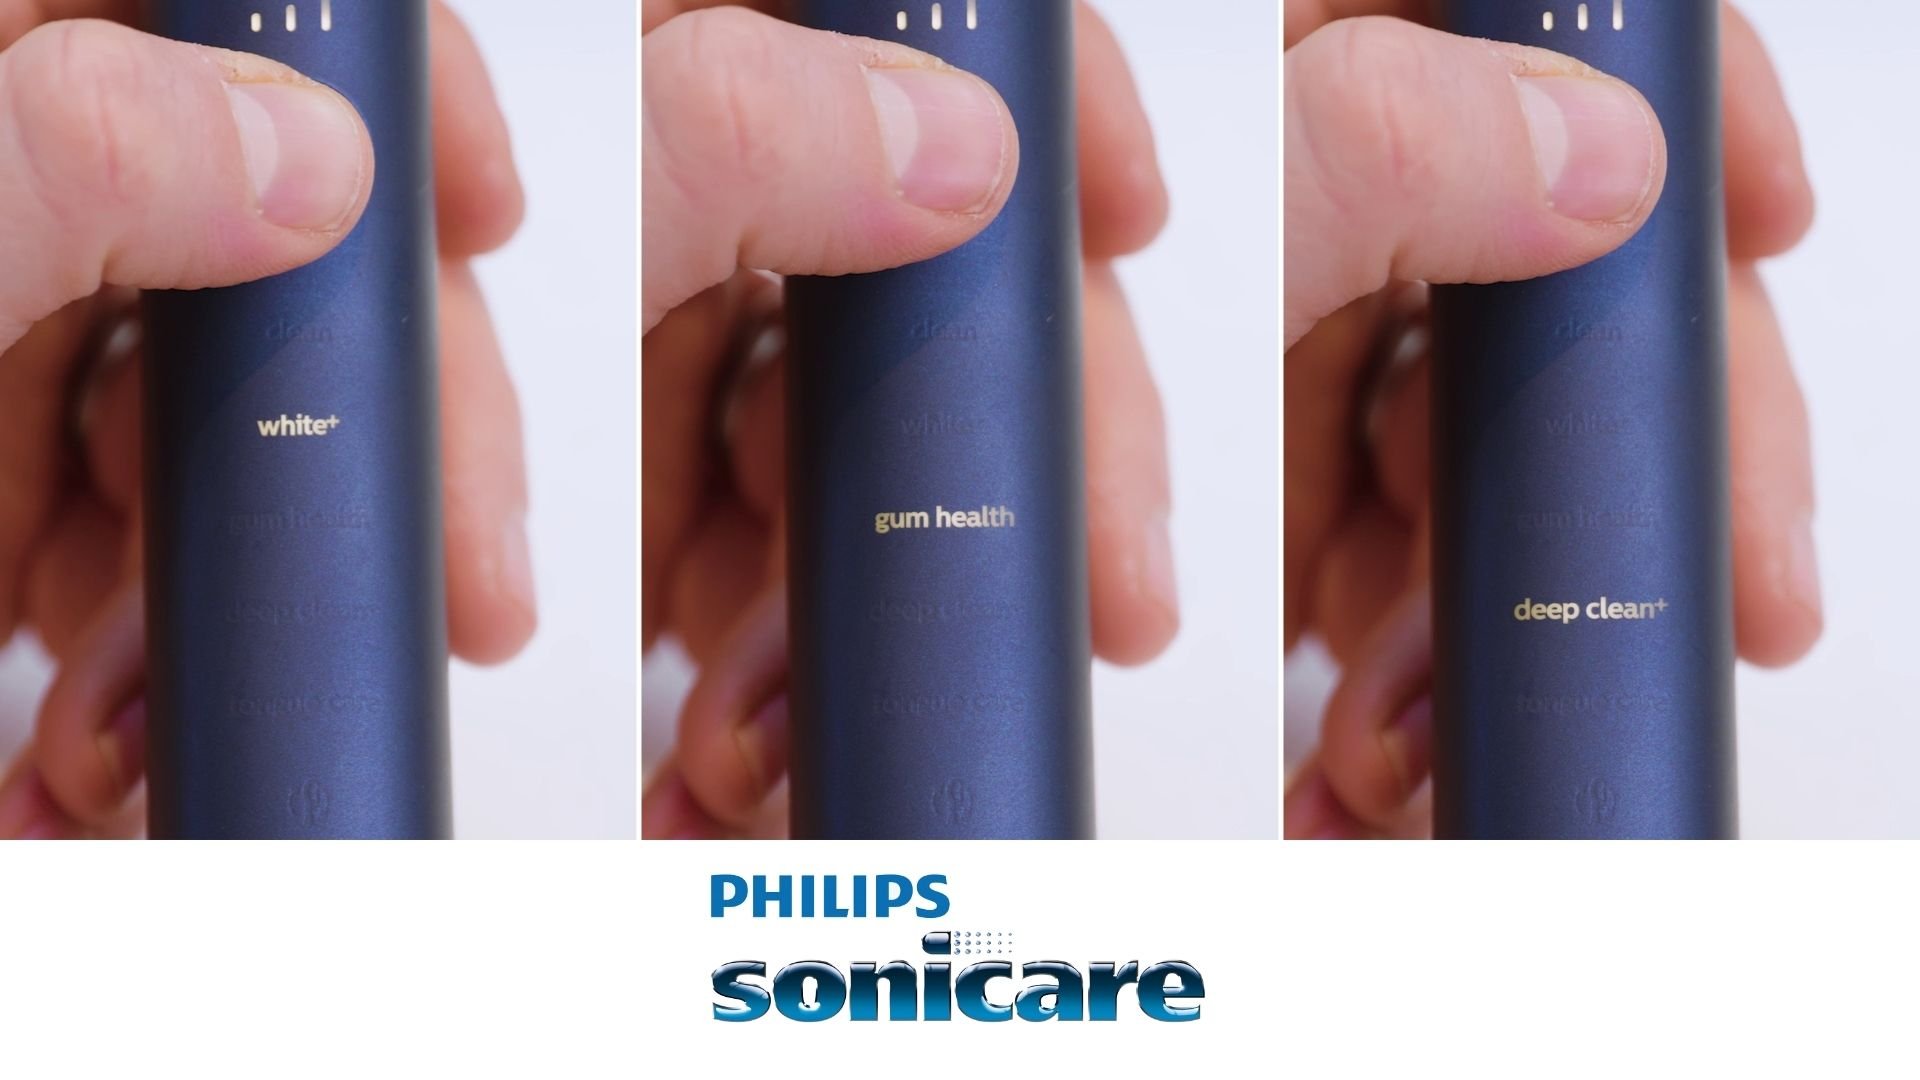 Philips Sonicare brushing modes explained 5